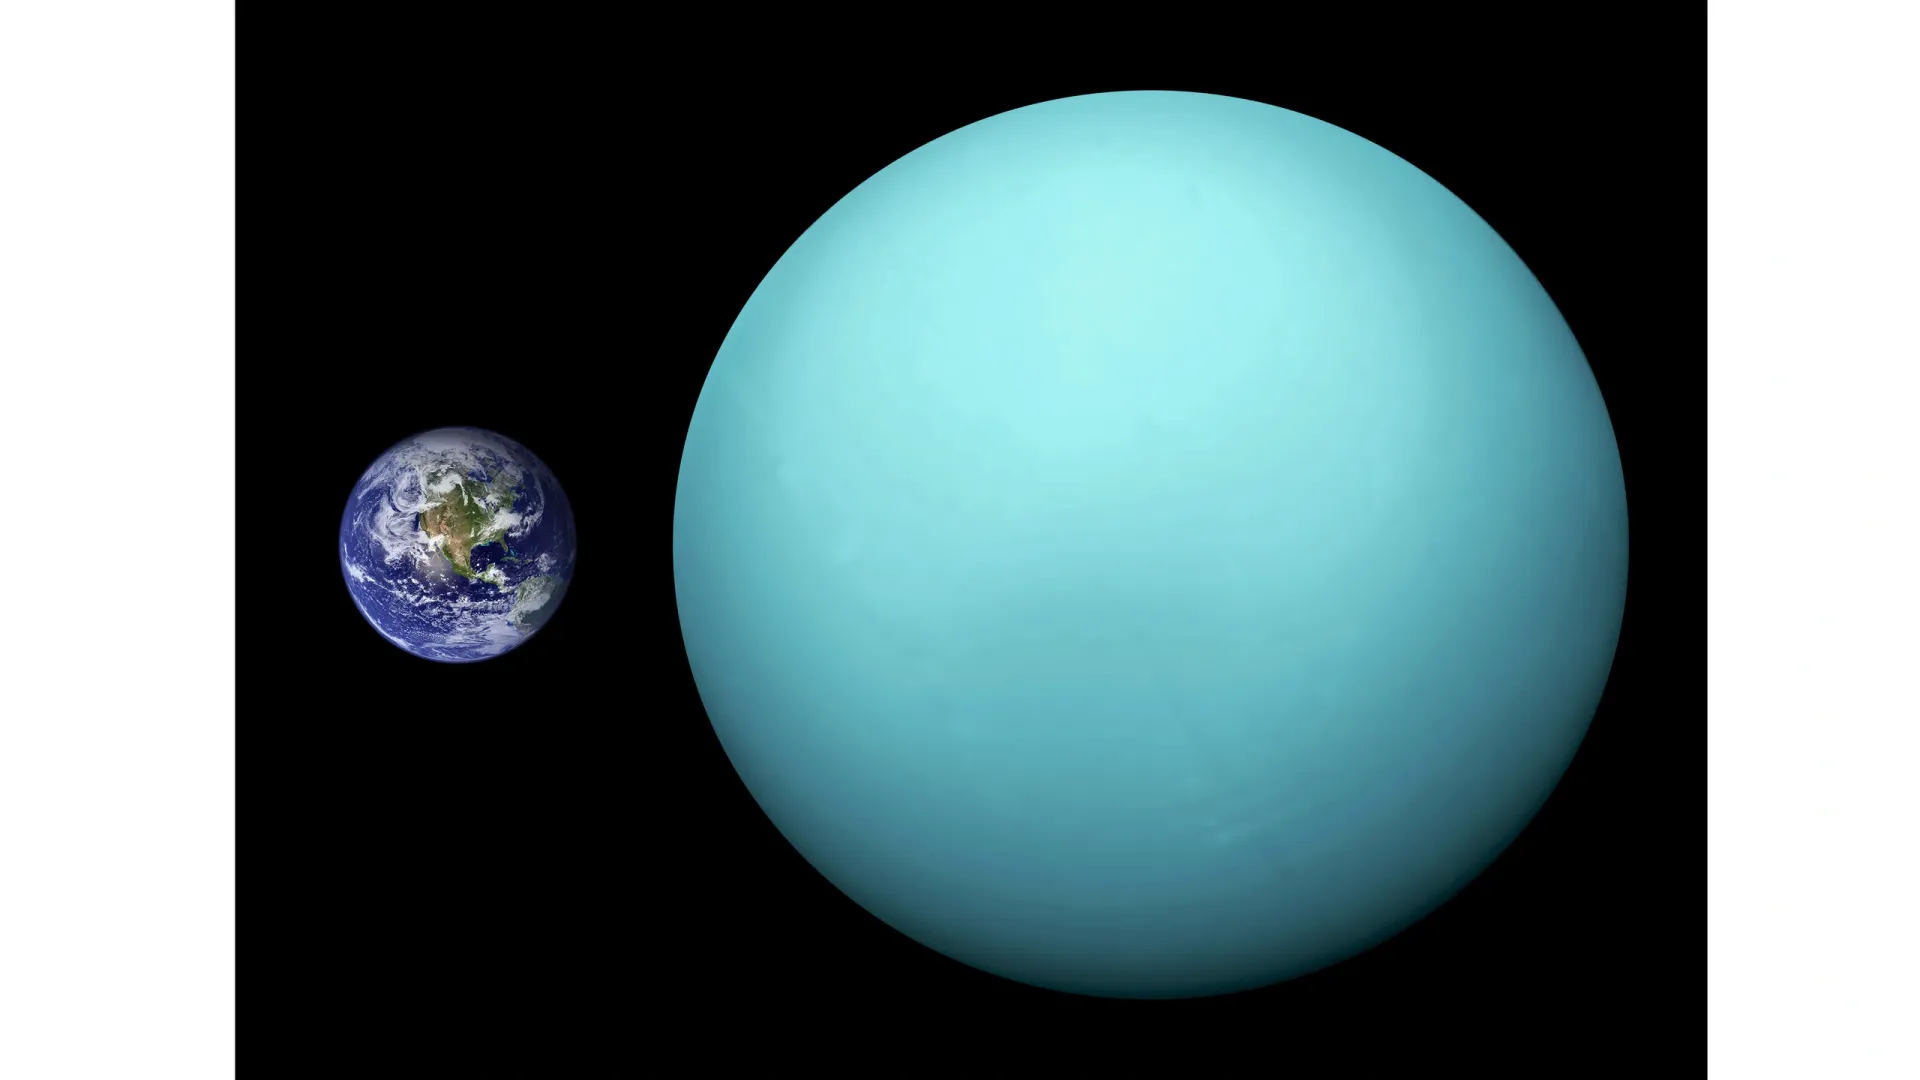 Сопоставление реальных размеров Земли и Урана. Источник: wikipedia.org